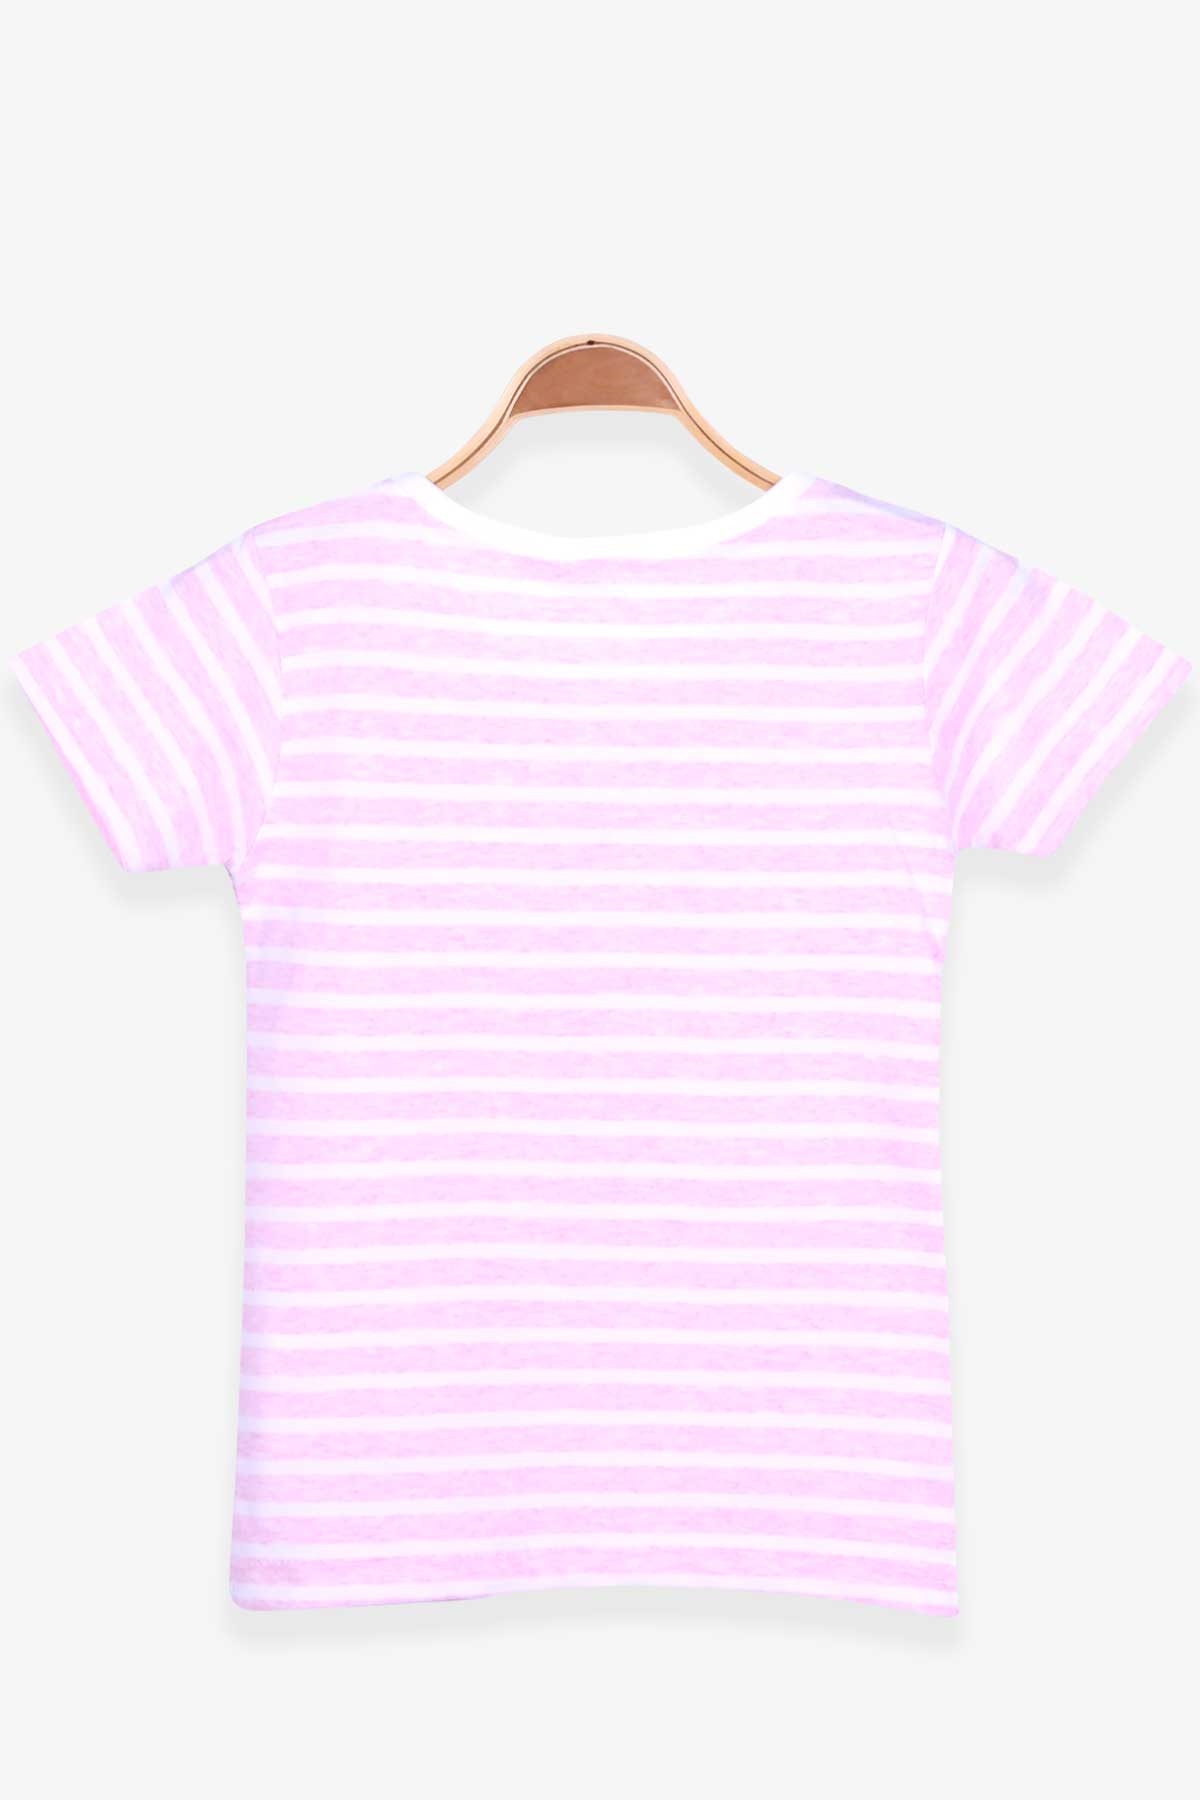 Kız Bebek Tişört Çizgili Pembe Melanj 9 Ay-1 Yaş - Yazlık Tişörtler | Breeze